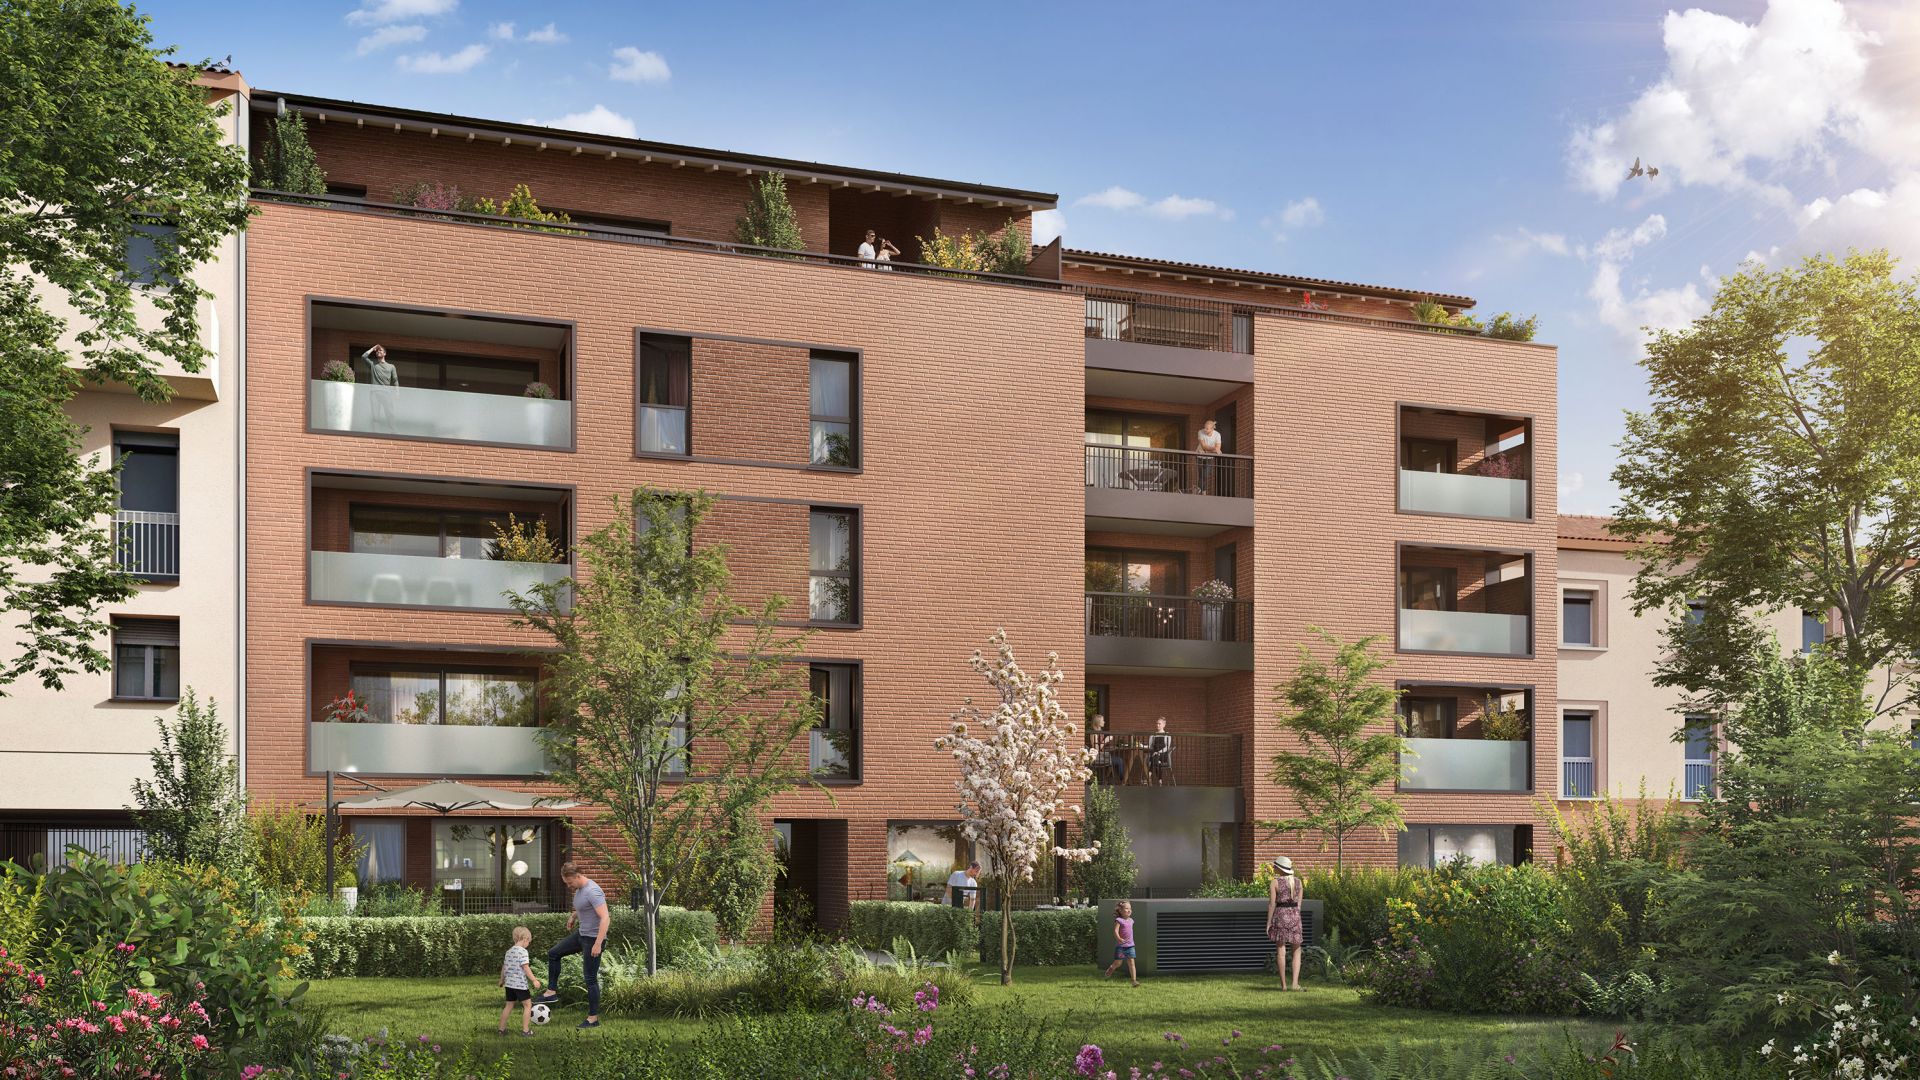 Greencity immobilier - achat appartements neufs du T1 au T5 - Résidence Central Park - 31400 Toulouse